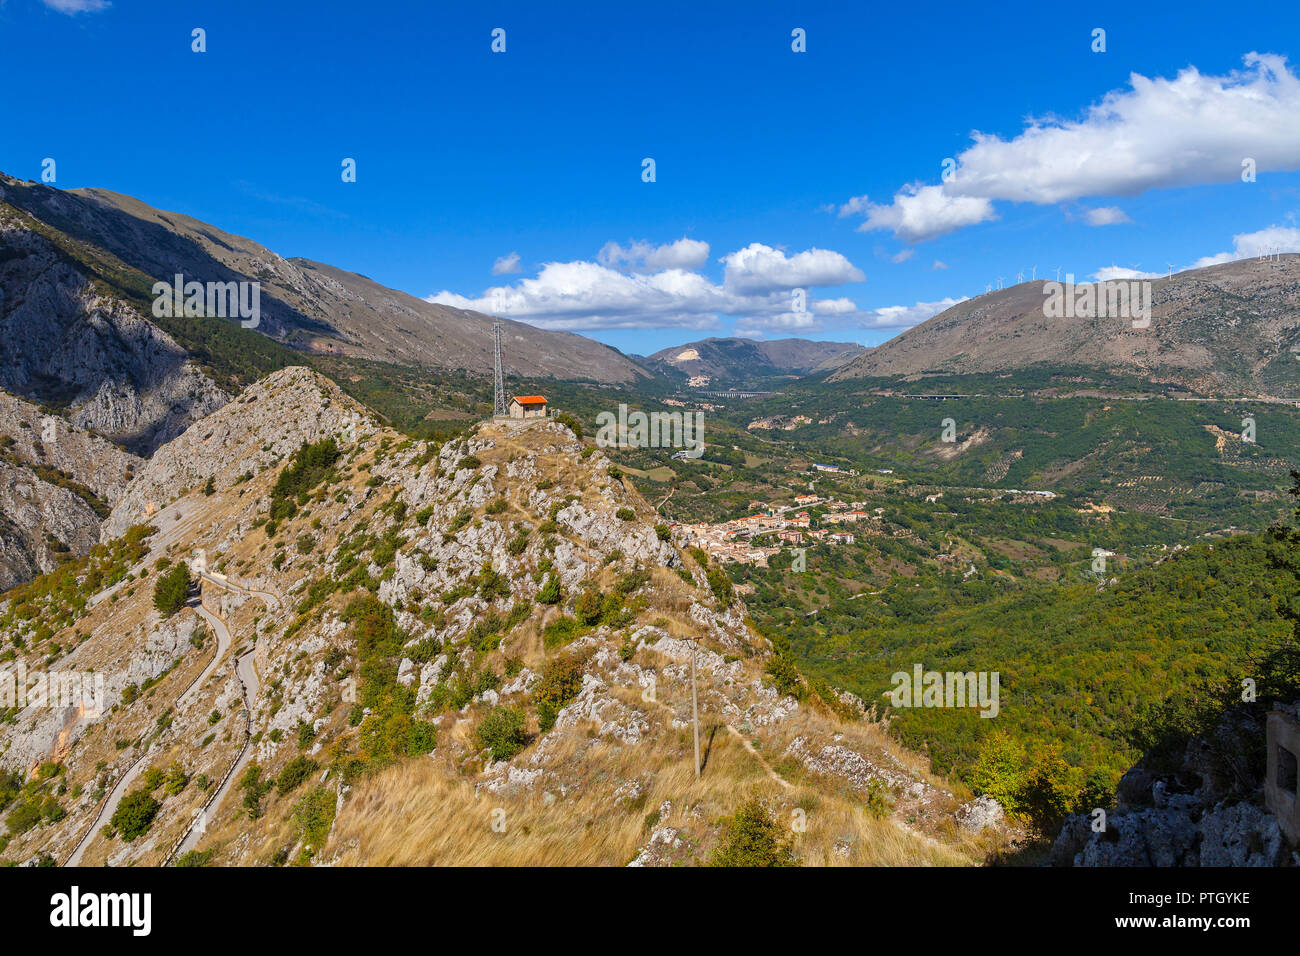 Antenna su uno sperone roccioso a Castrovalva, in provincia di L'Aquila, la regione Abruzzo, Italia, affacciato sulla riserva naturale delle Gole del Sagittario Foto Stock